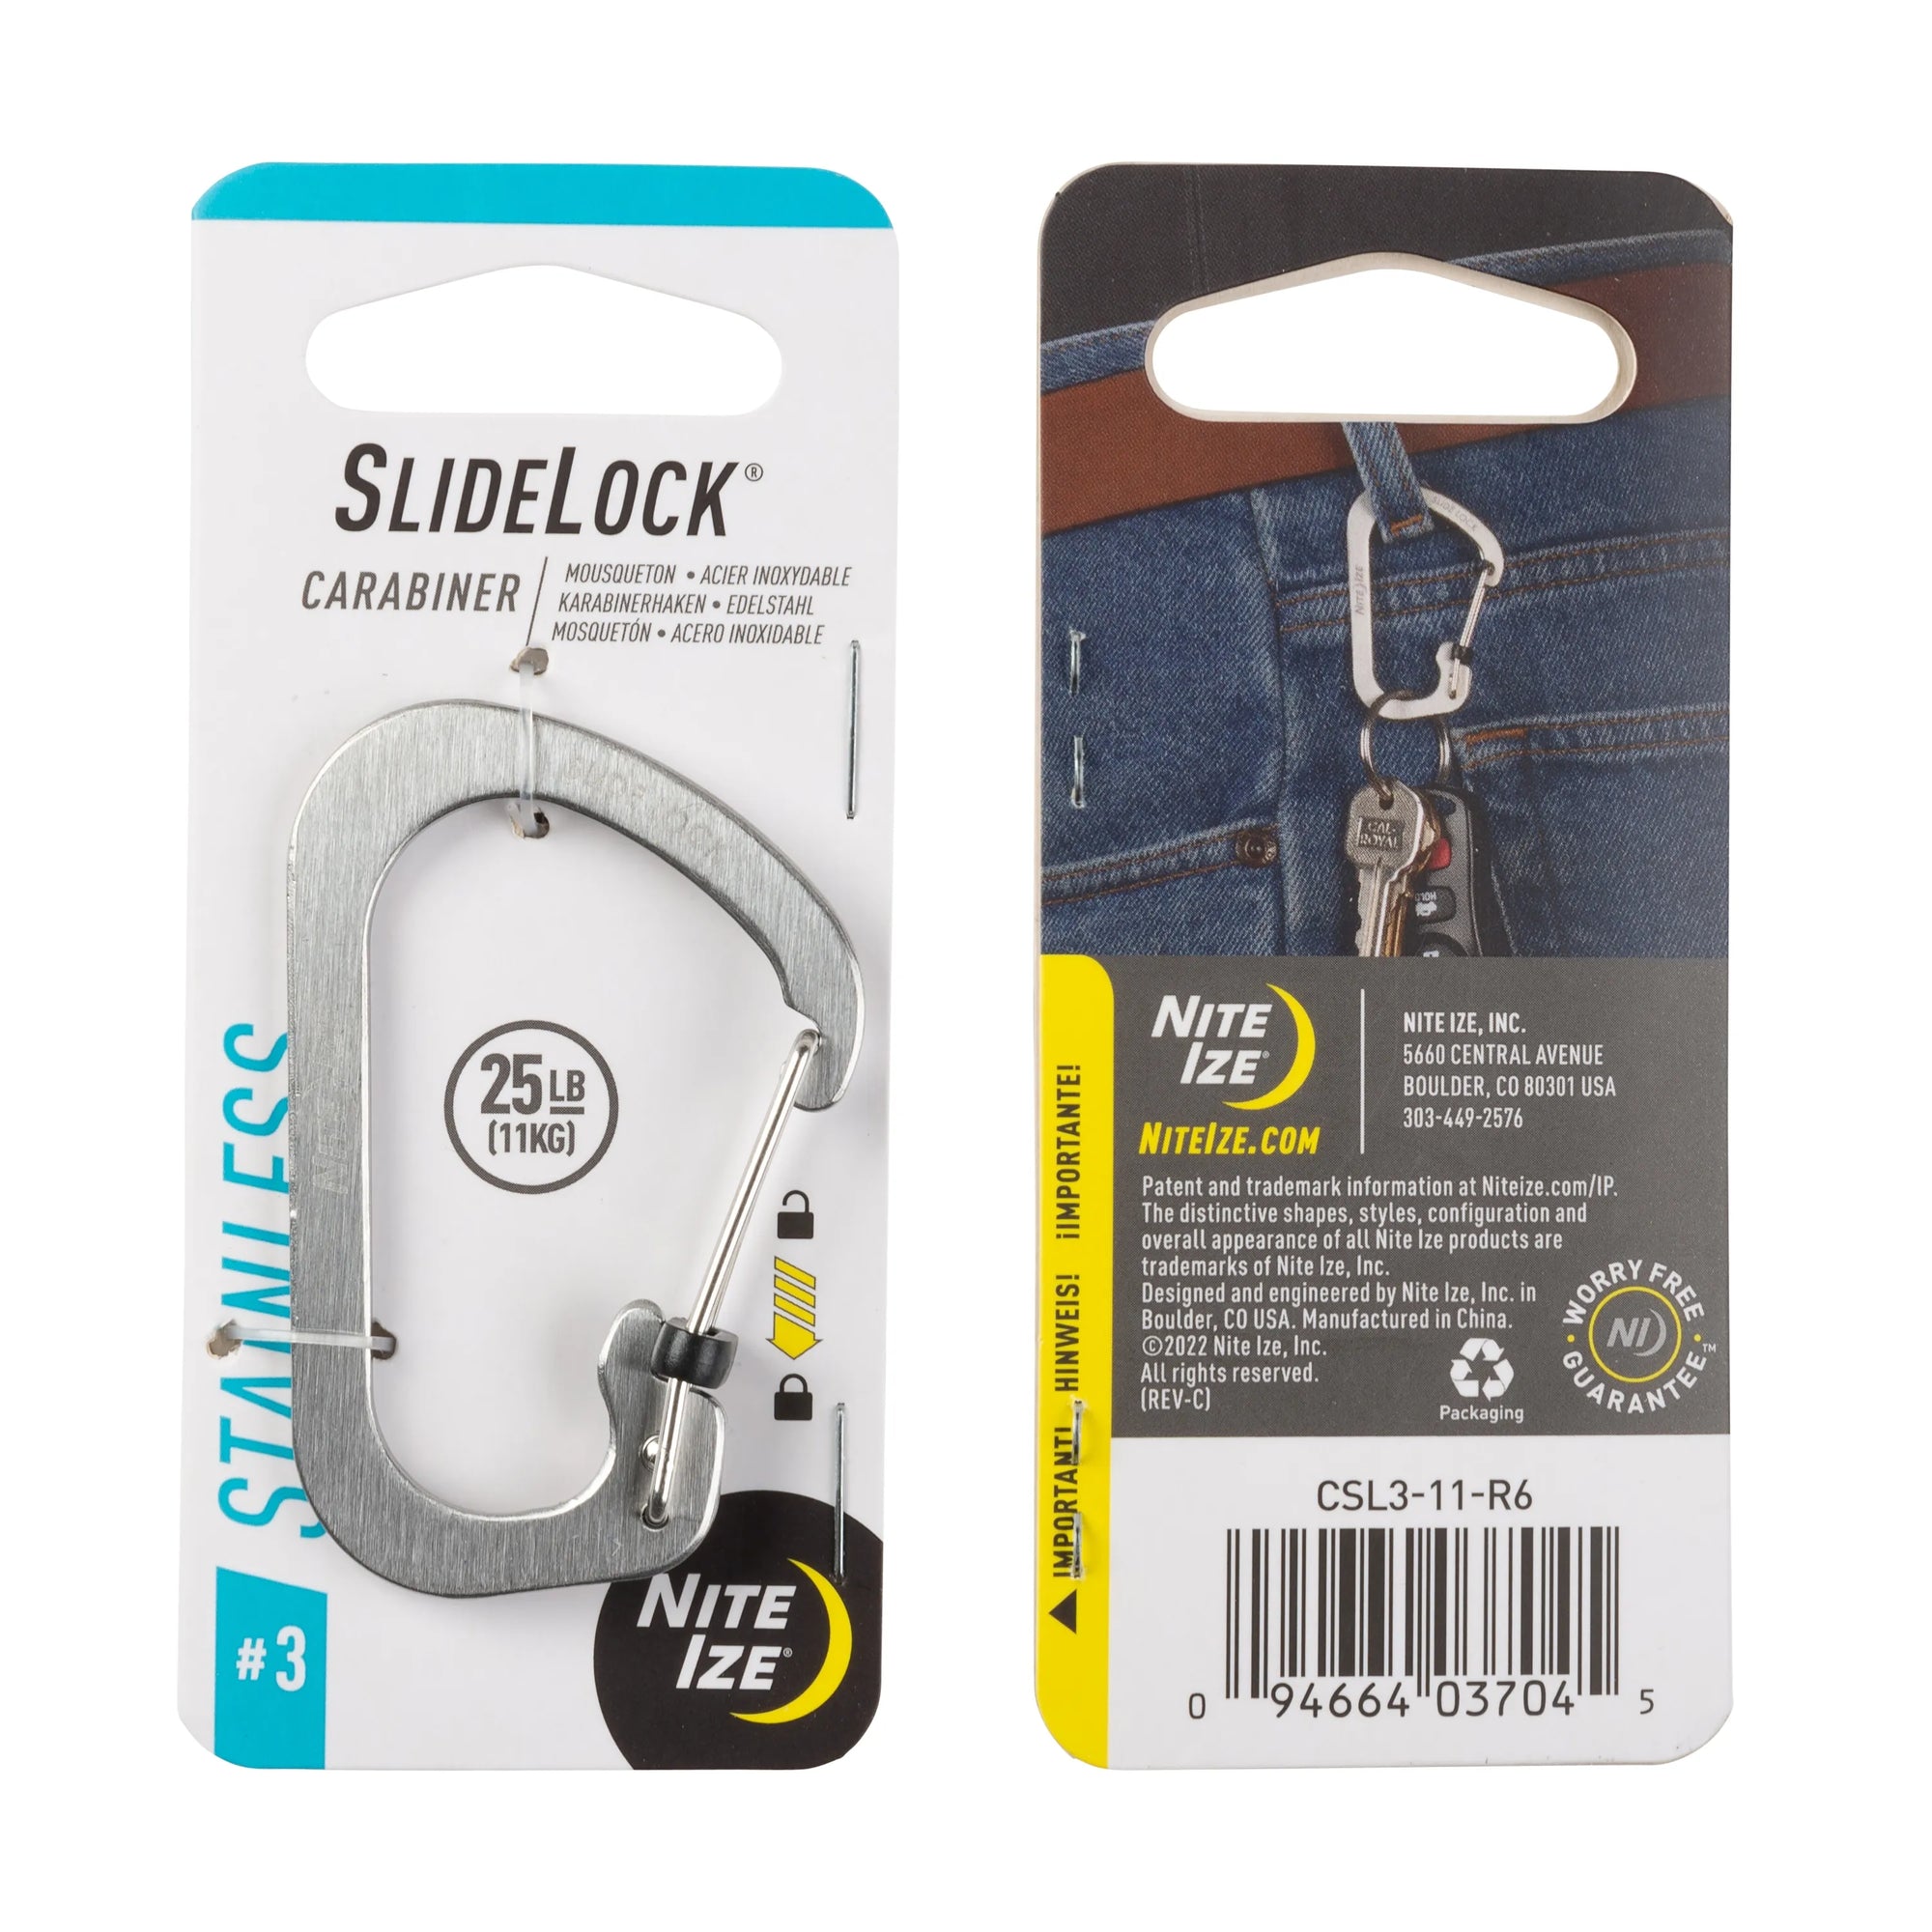 Slidelock® Carabiner Stainless Steel